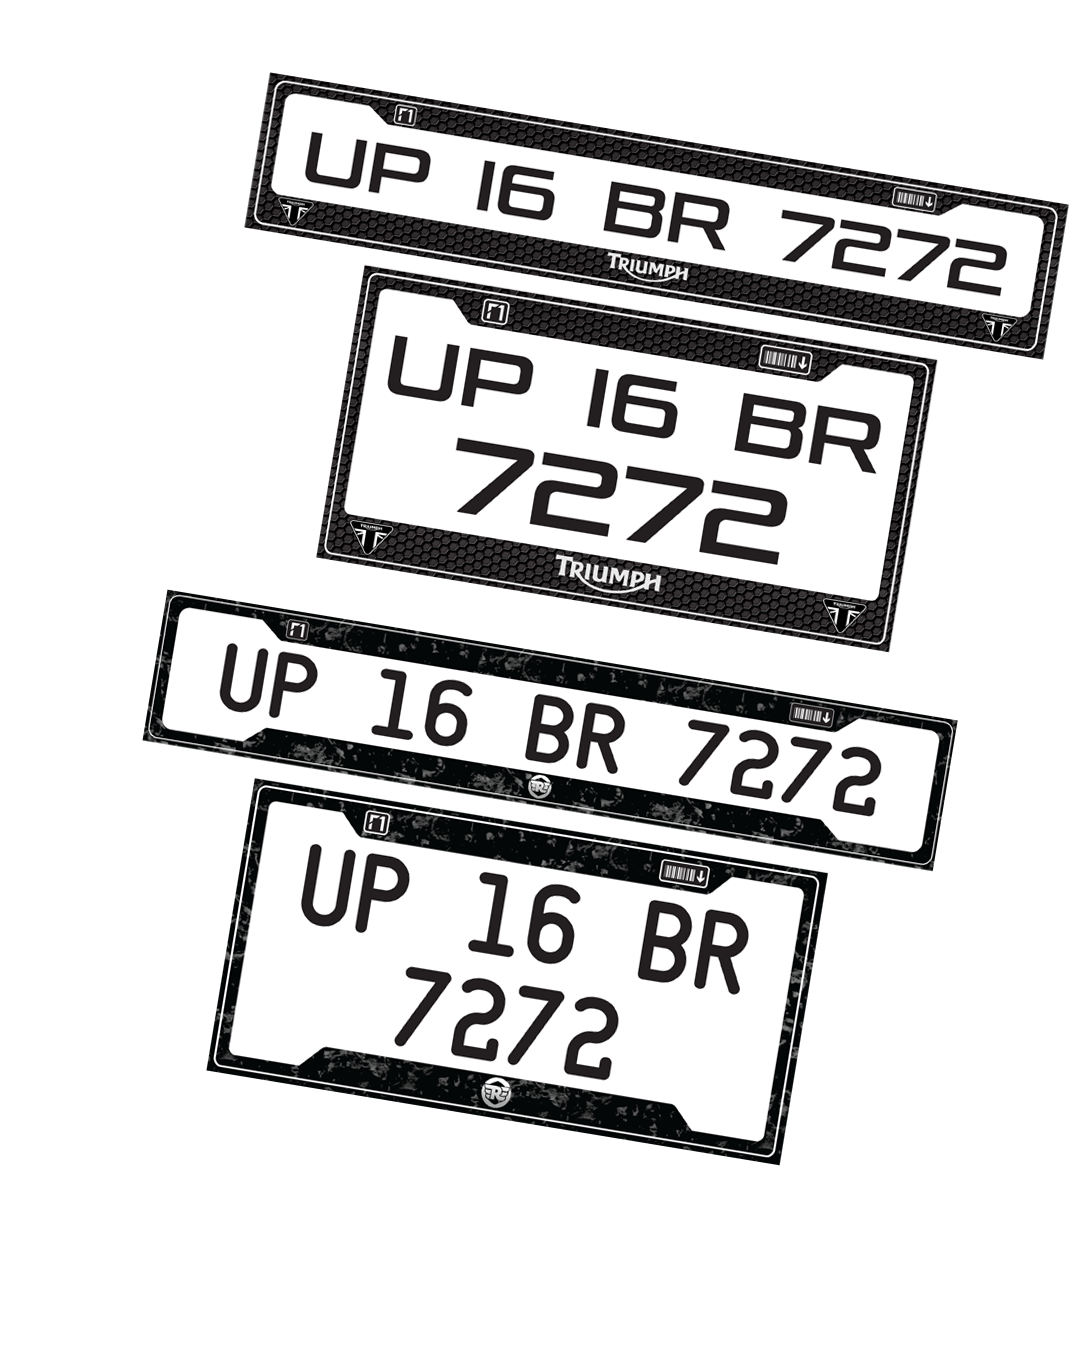 Slider - F1 number plates